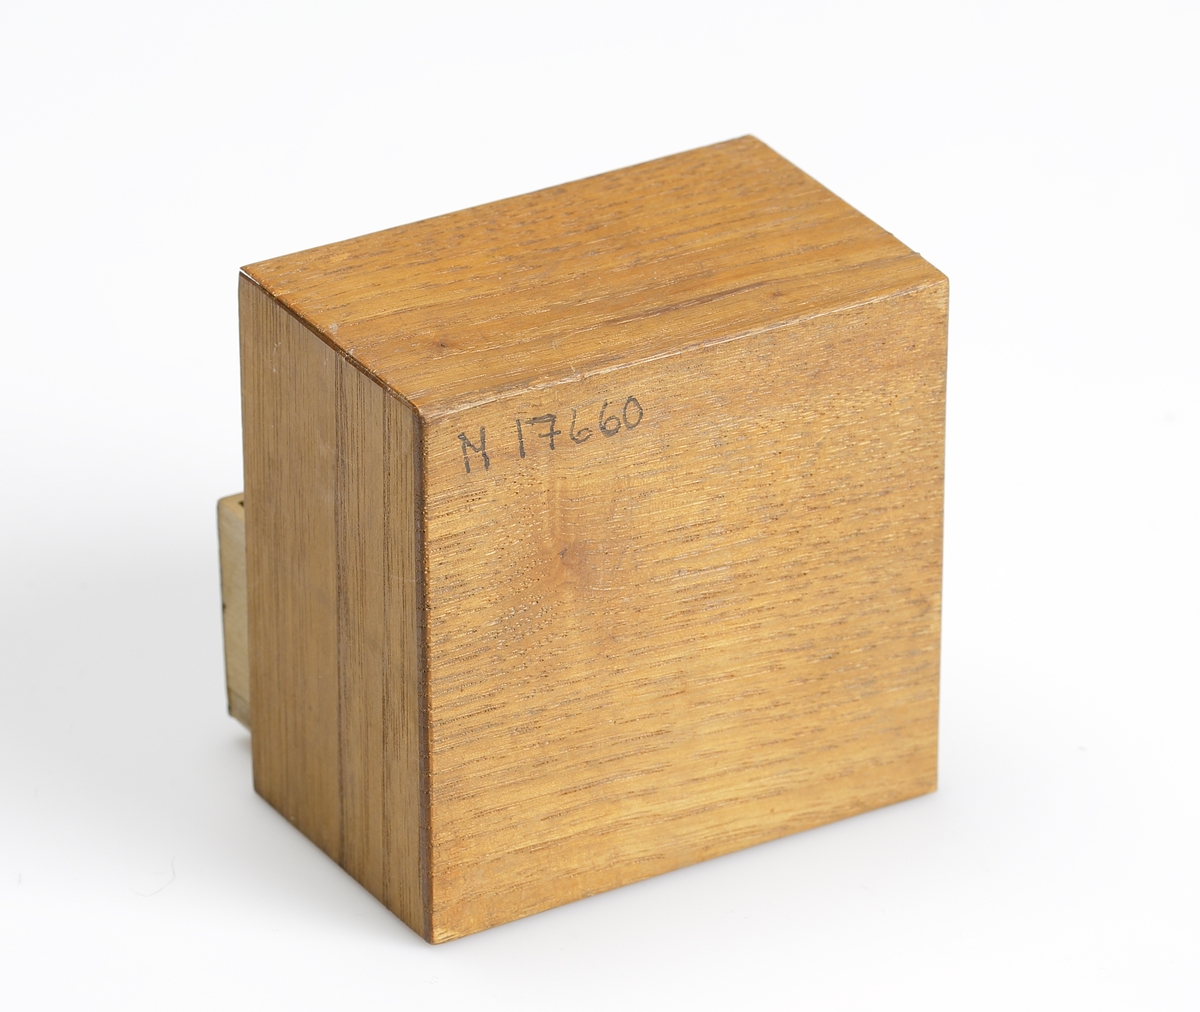 Dockskåpsbyrå i trä. Tre utdragbara lådor med intarsia på lådfronten. I lådorna förvaras tre dockkläningar, två hättor och diverse små tygbitar.